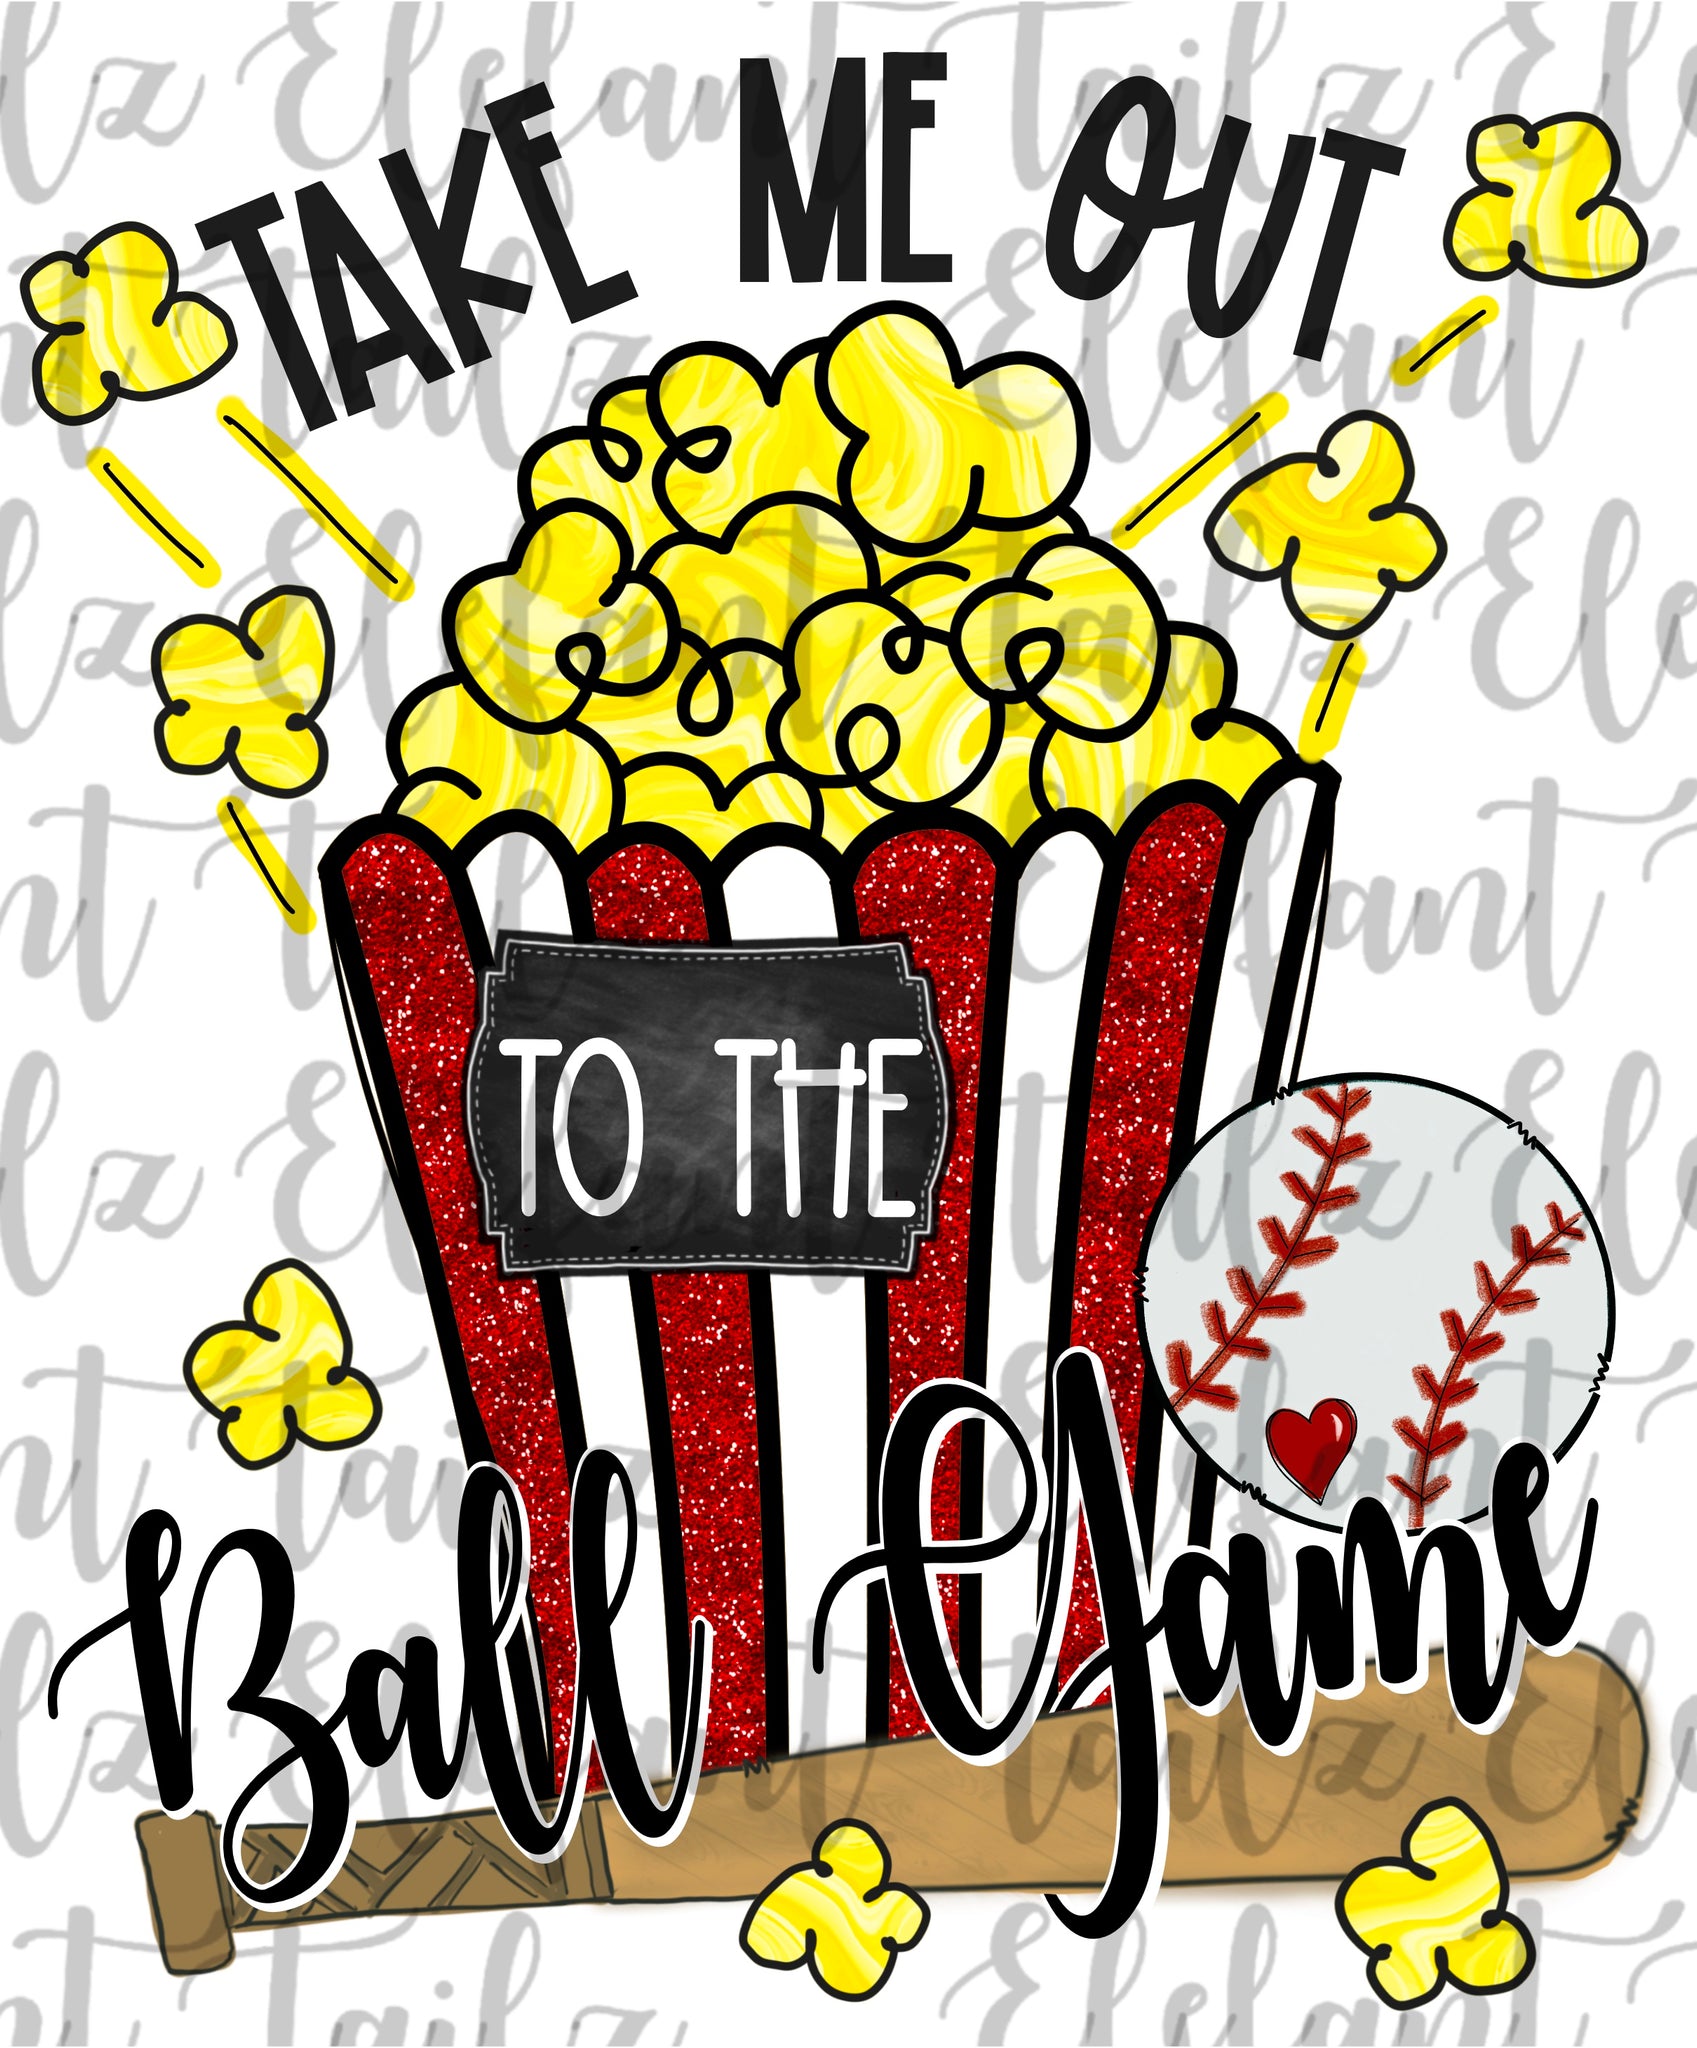 Take Me Out to the Ballgame Popcorn